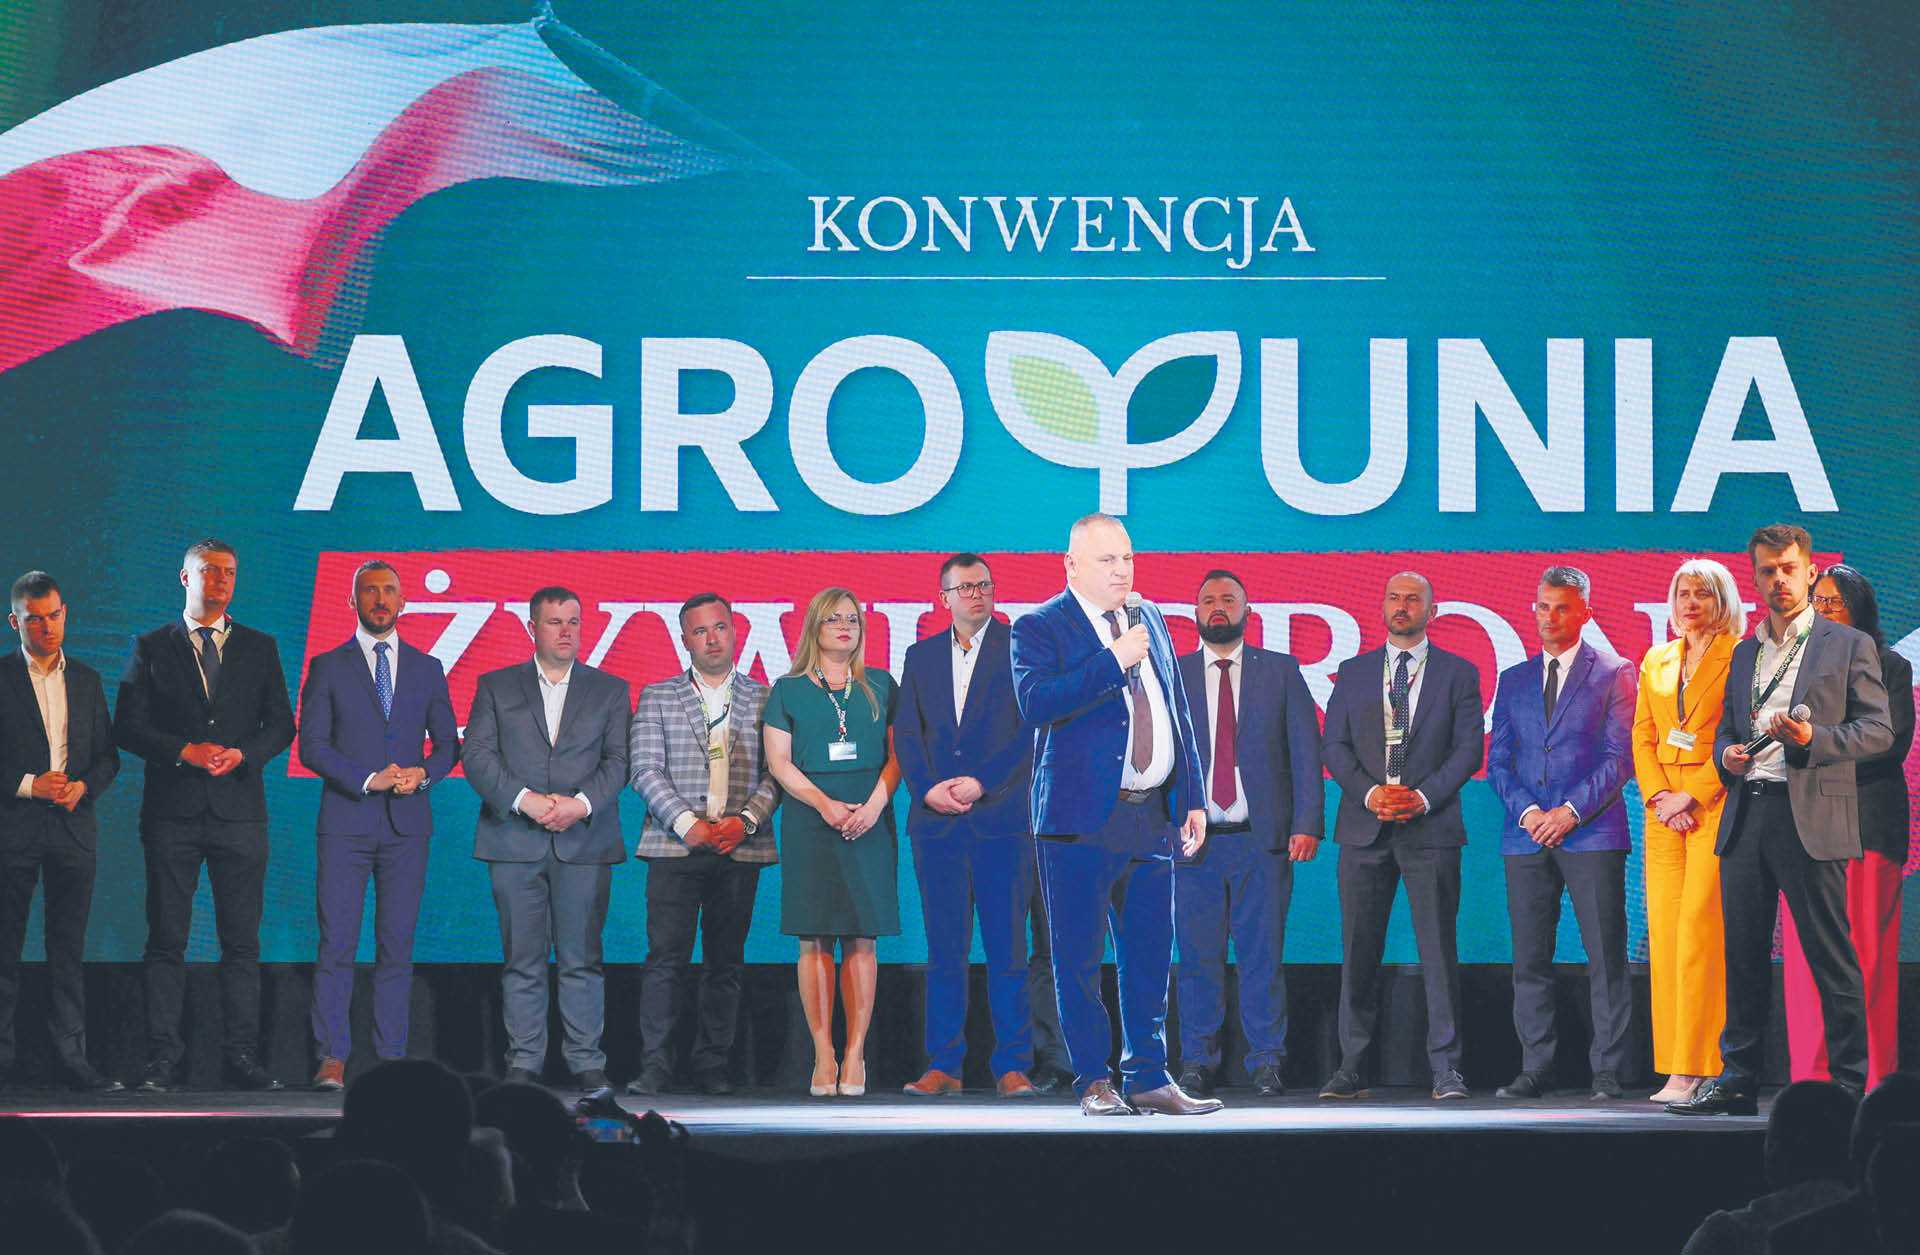 Propozycje dotyczące cyfryzacji przedstawione przez rolniczą partię to nowość na polskiej scenie politycznej